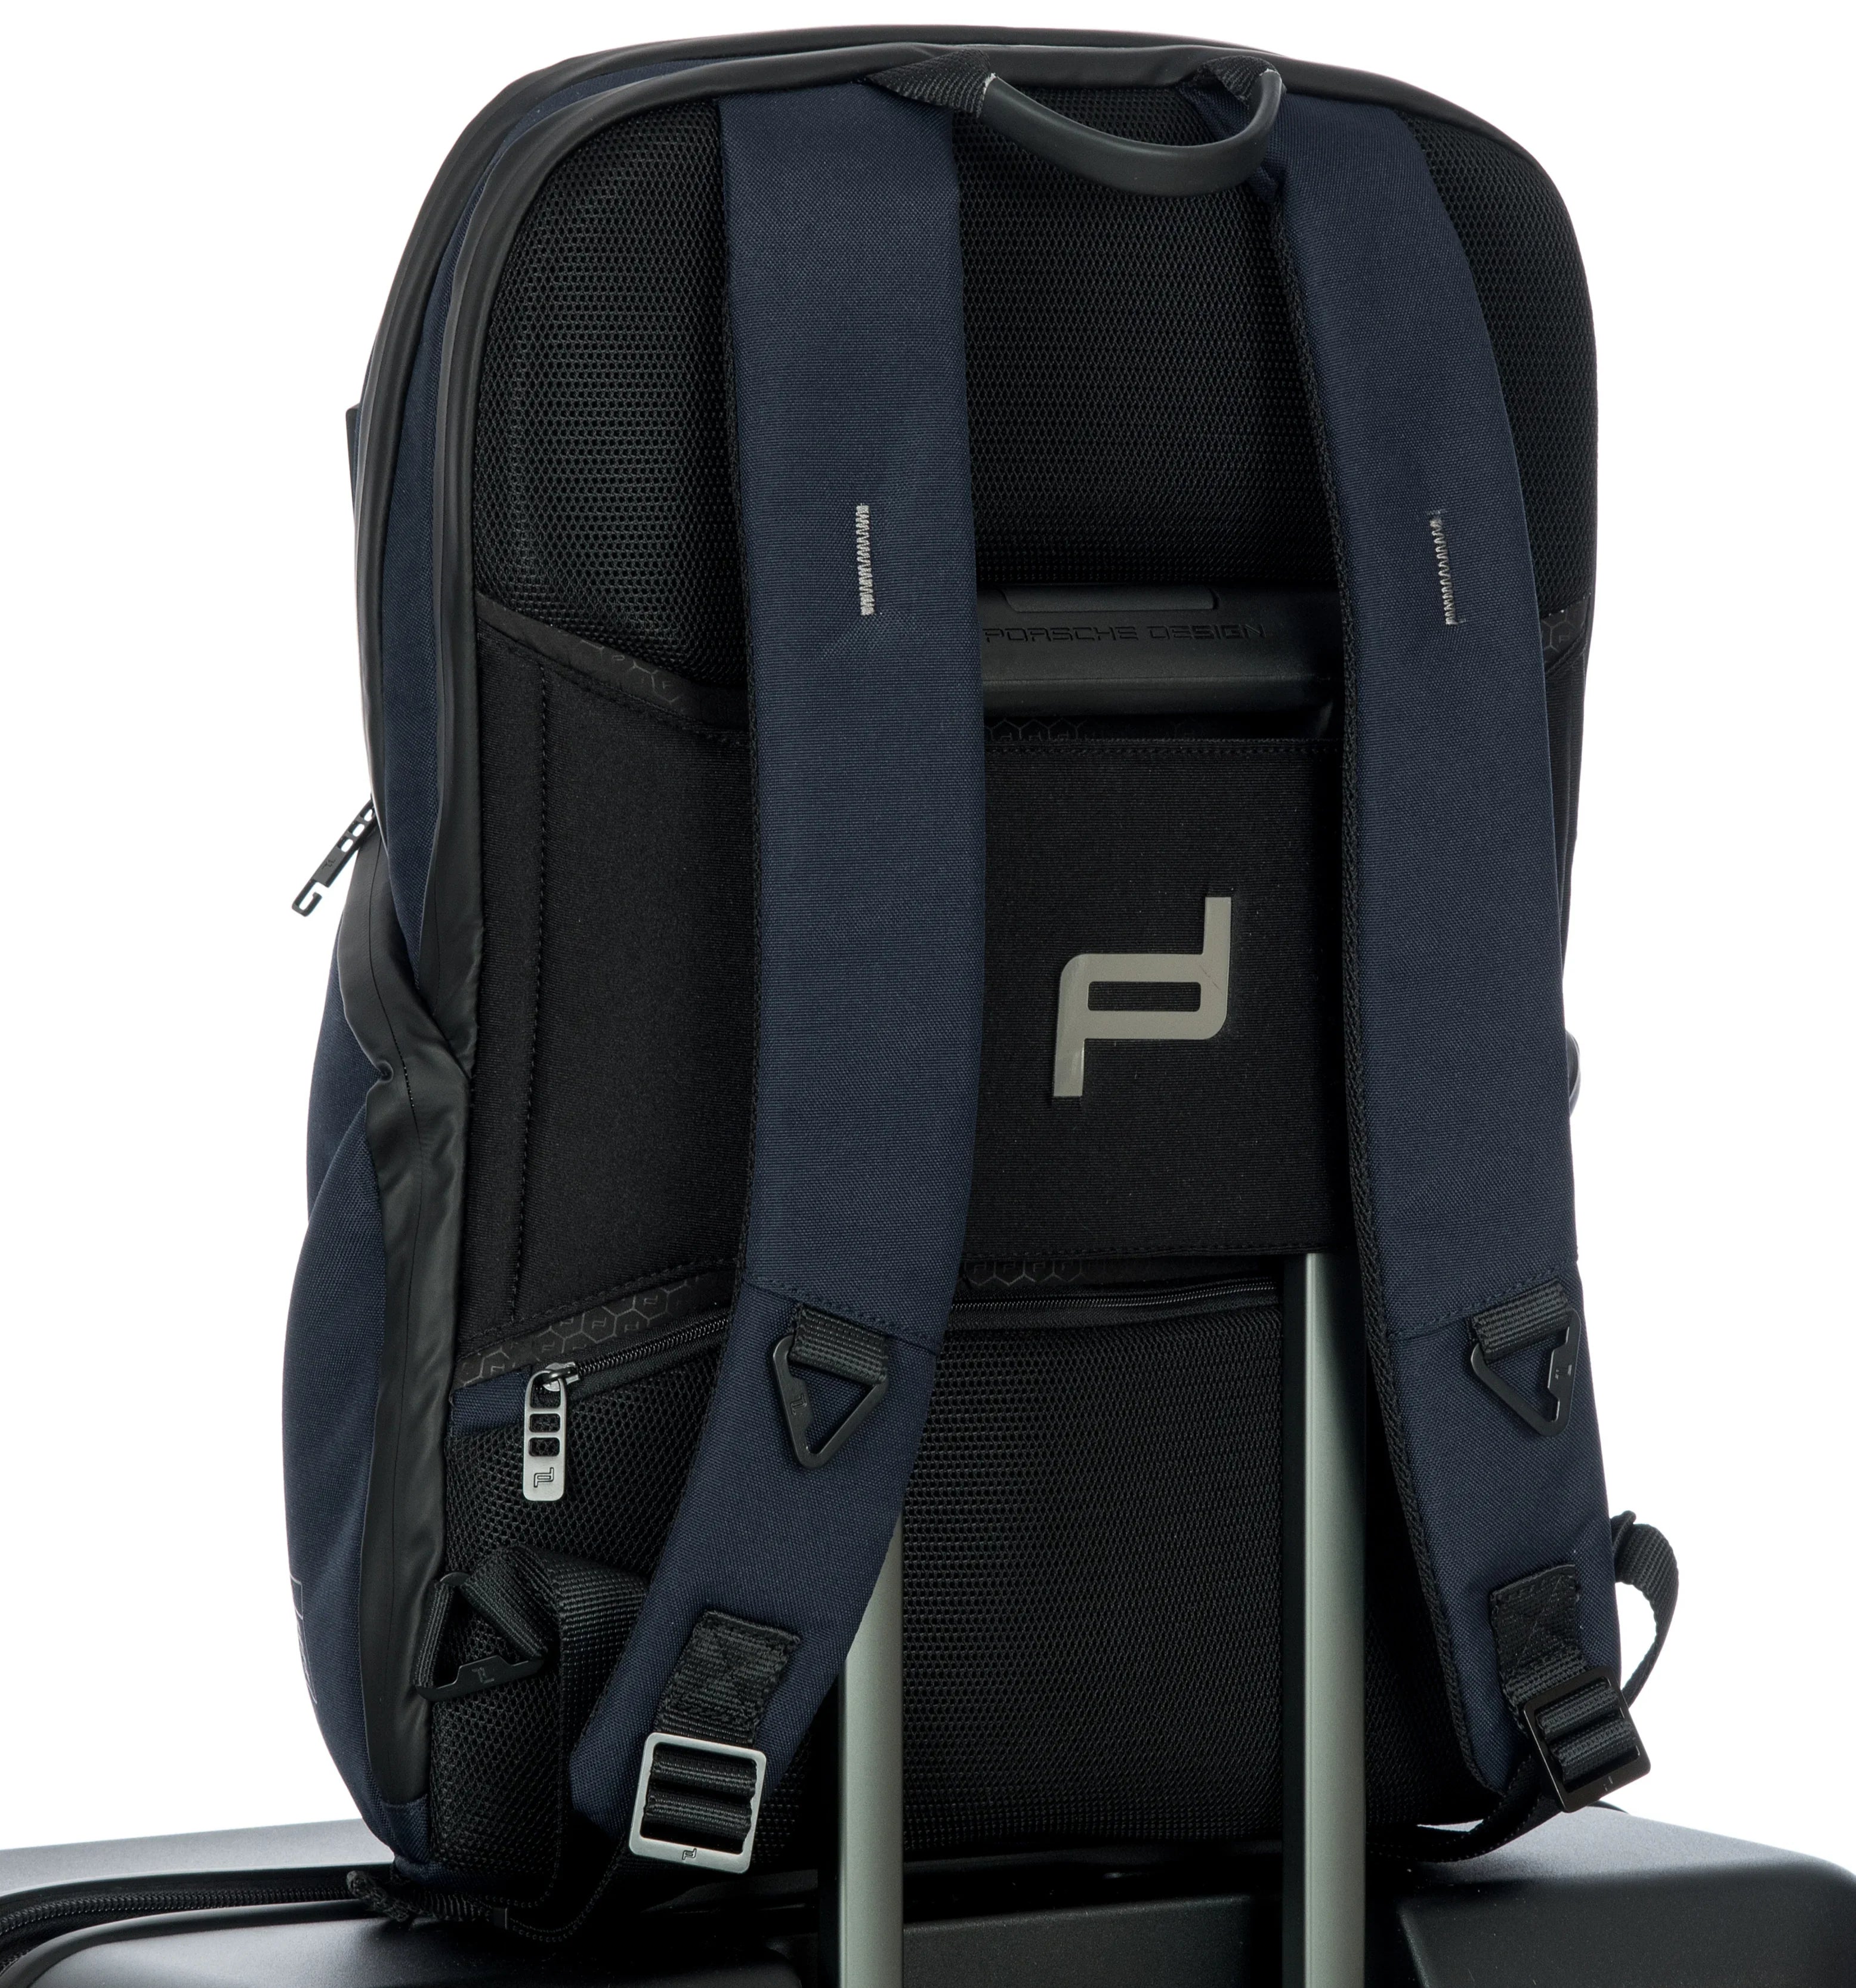 Porsche Design Urban Eco Backpack M2 43 cm - Dark Blue